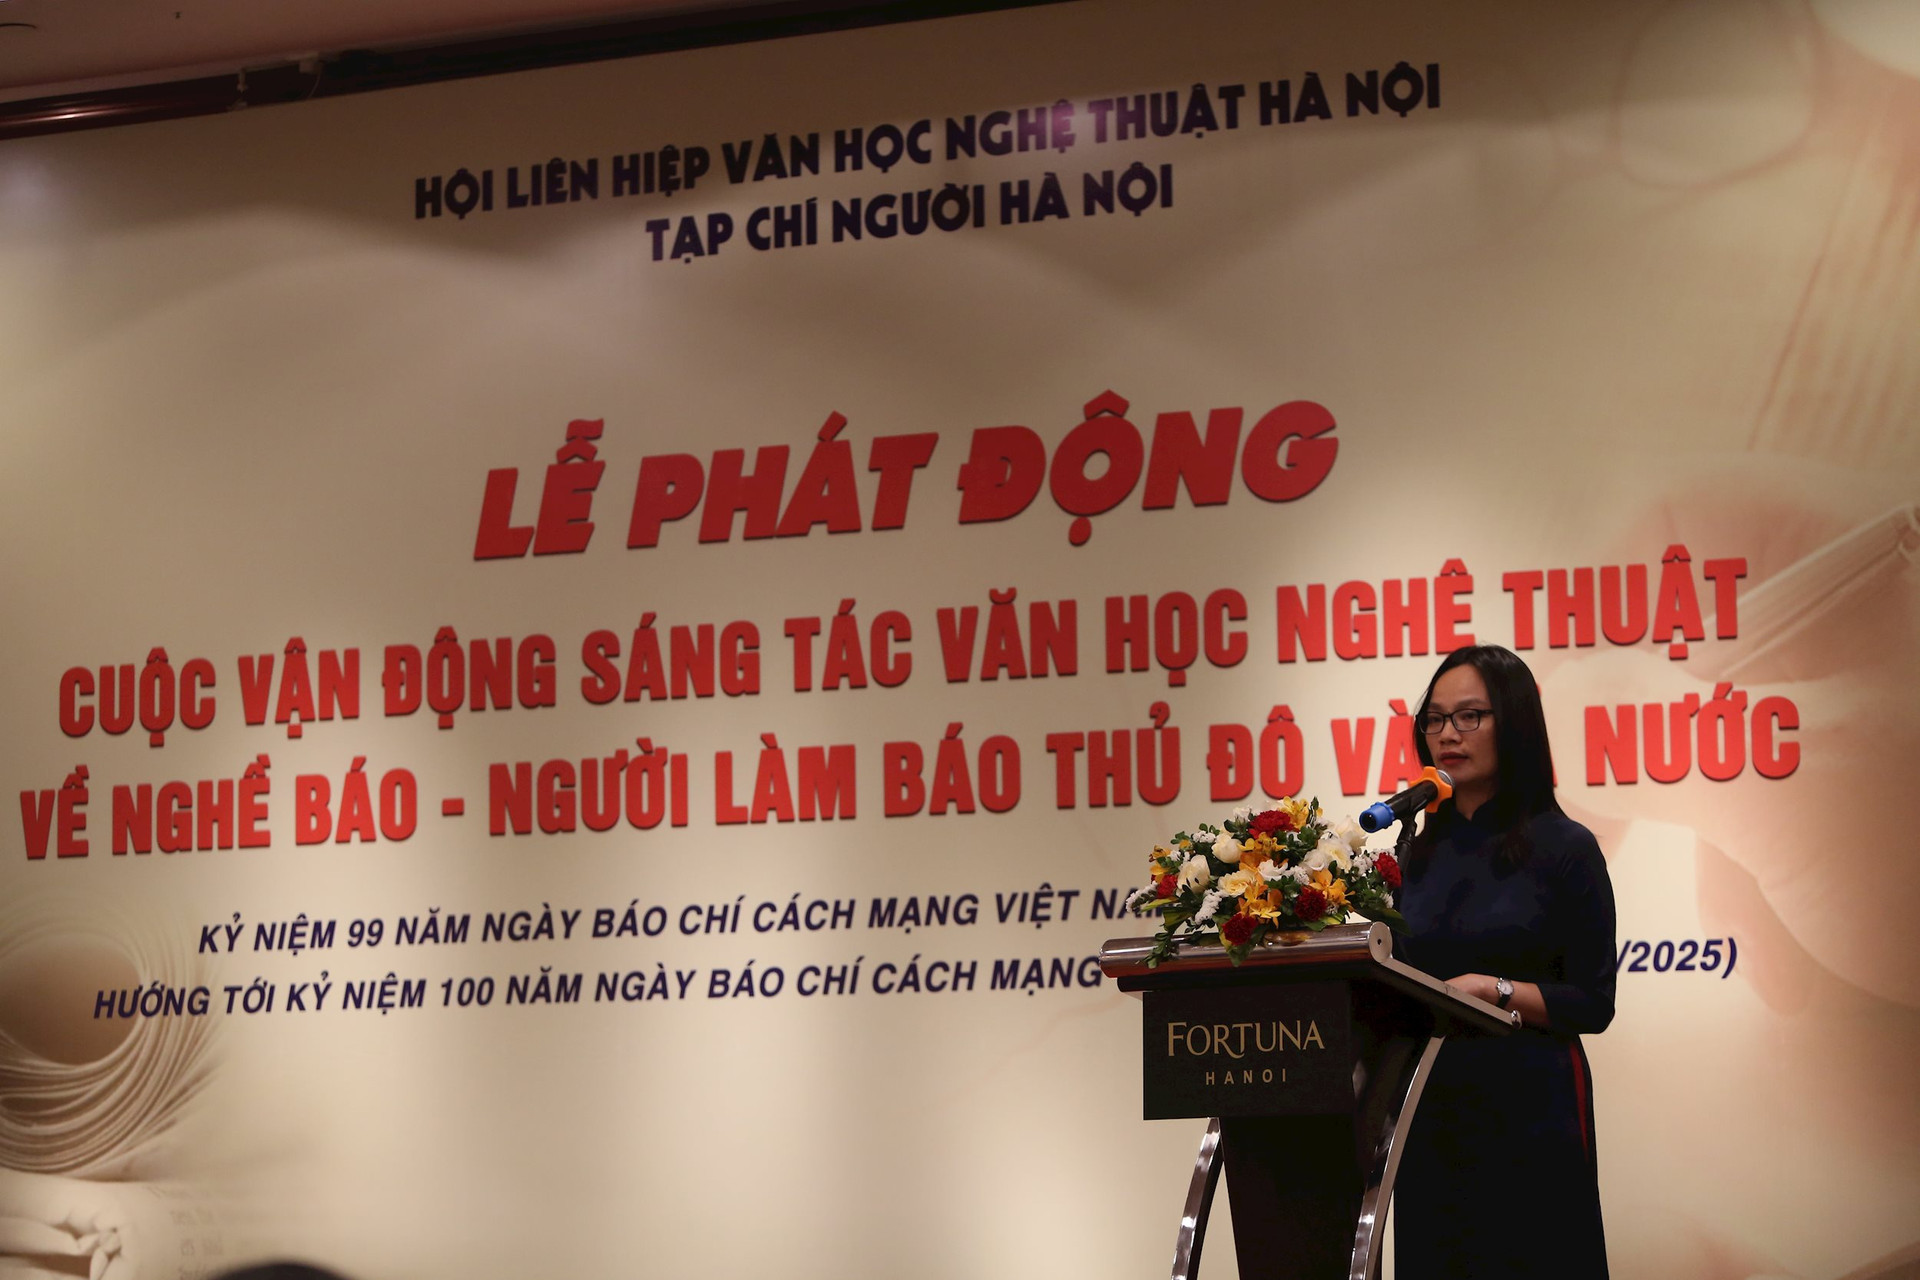 Nhà báo Vương Minh Huệ - Tổng Biên tập Tạp chí Người Hà Nội, Trưởng Ban tổ chức phát biểu tại buổi lễ.